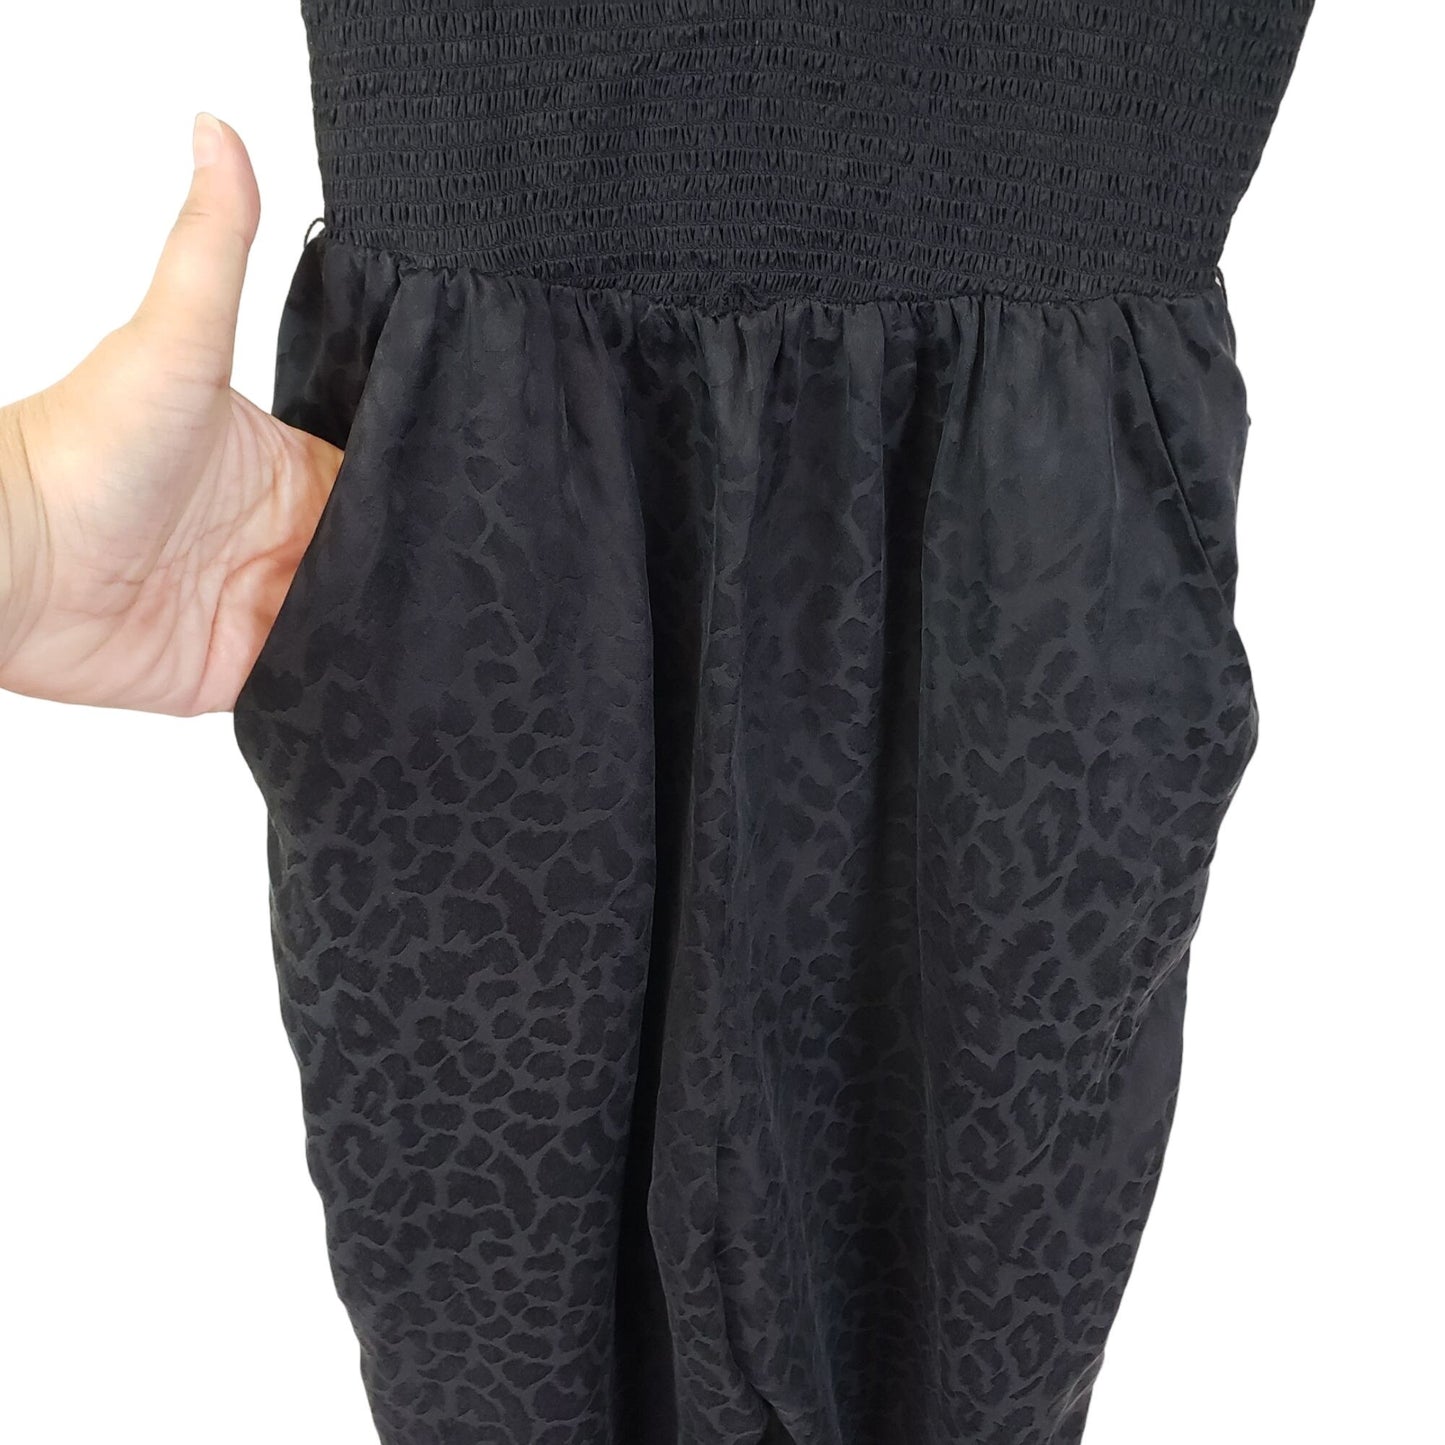 Rebecca Taylor 100% Silk Leopard Print Smocked Jumpsuit Size 2 *Missing Belt*